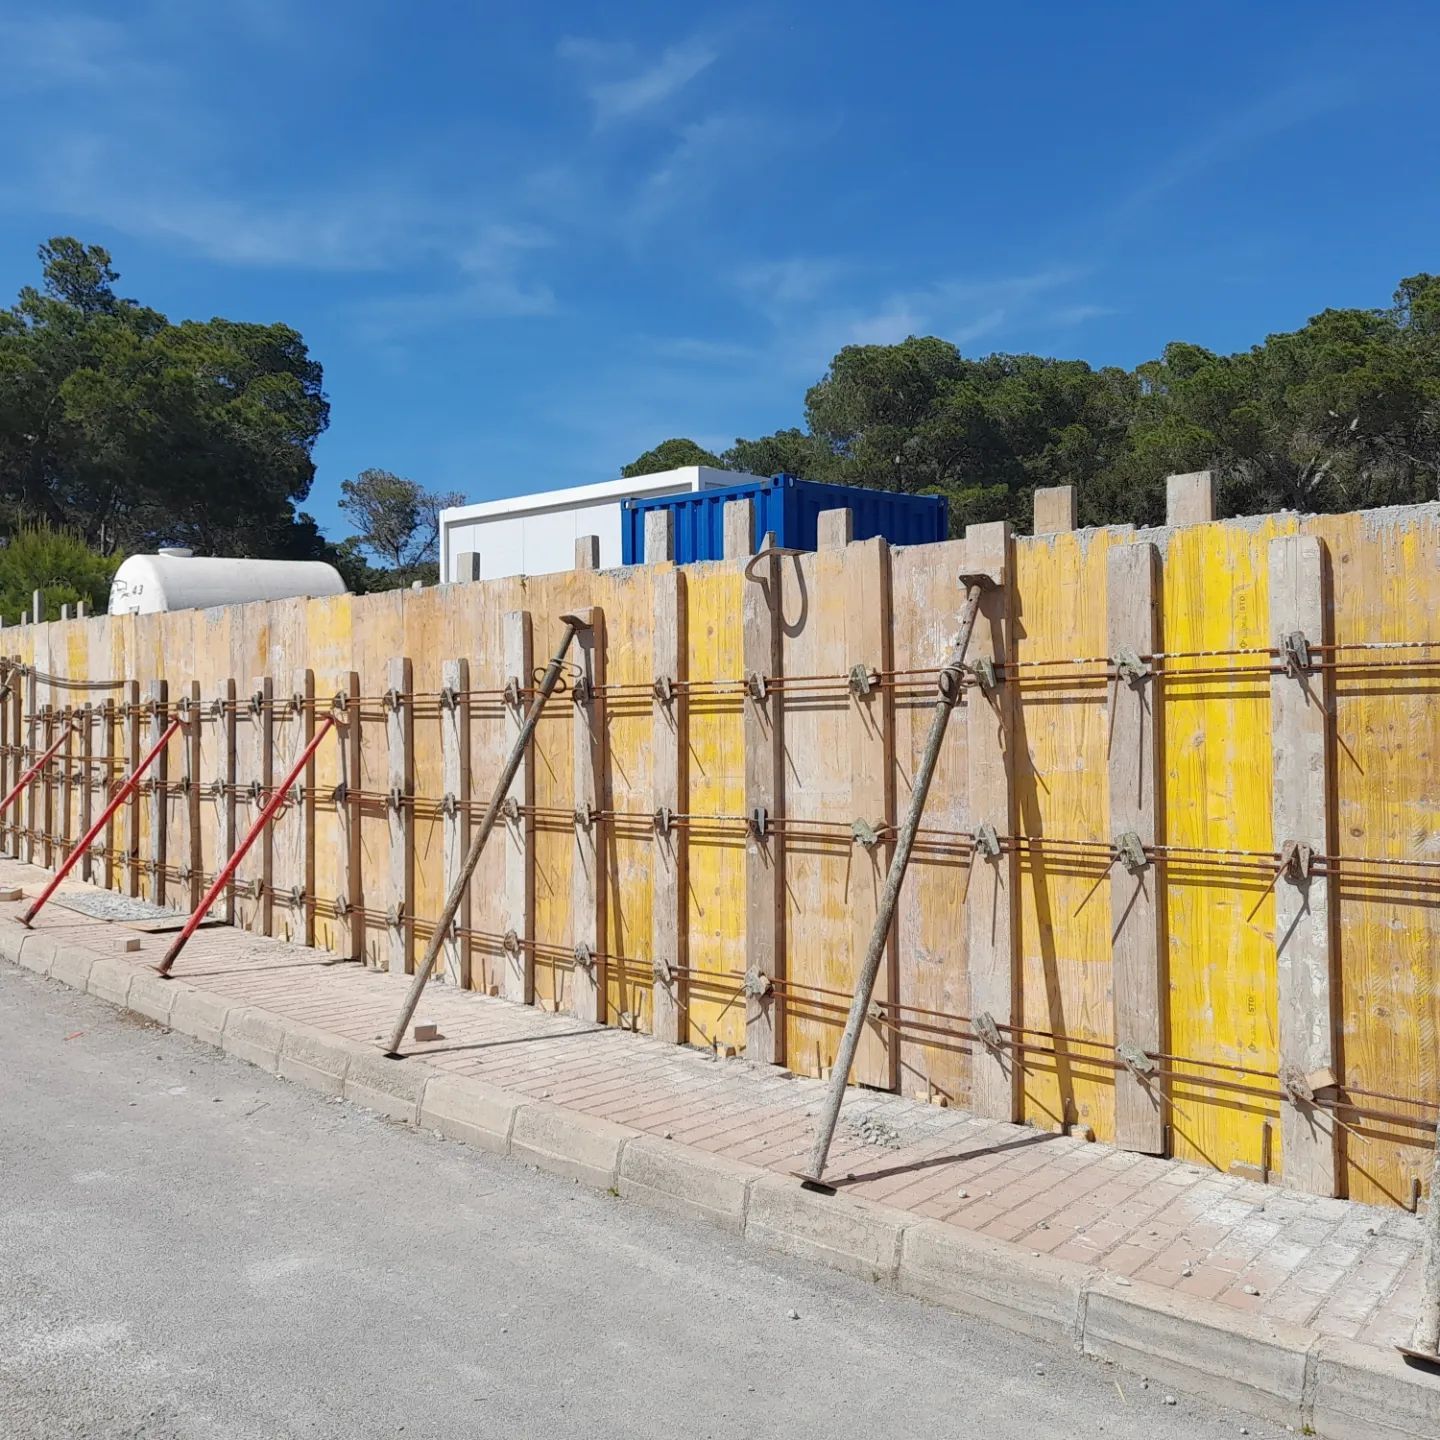 Muros!!!
#murodehormigón #encofrados #estructuradehormigón #constructoraibiza #ibiza #porticosyforjados